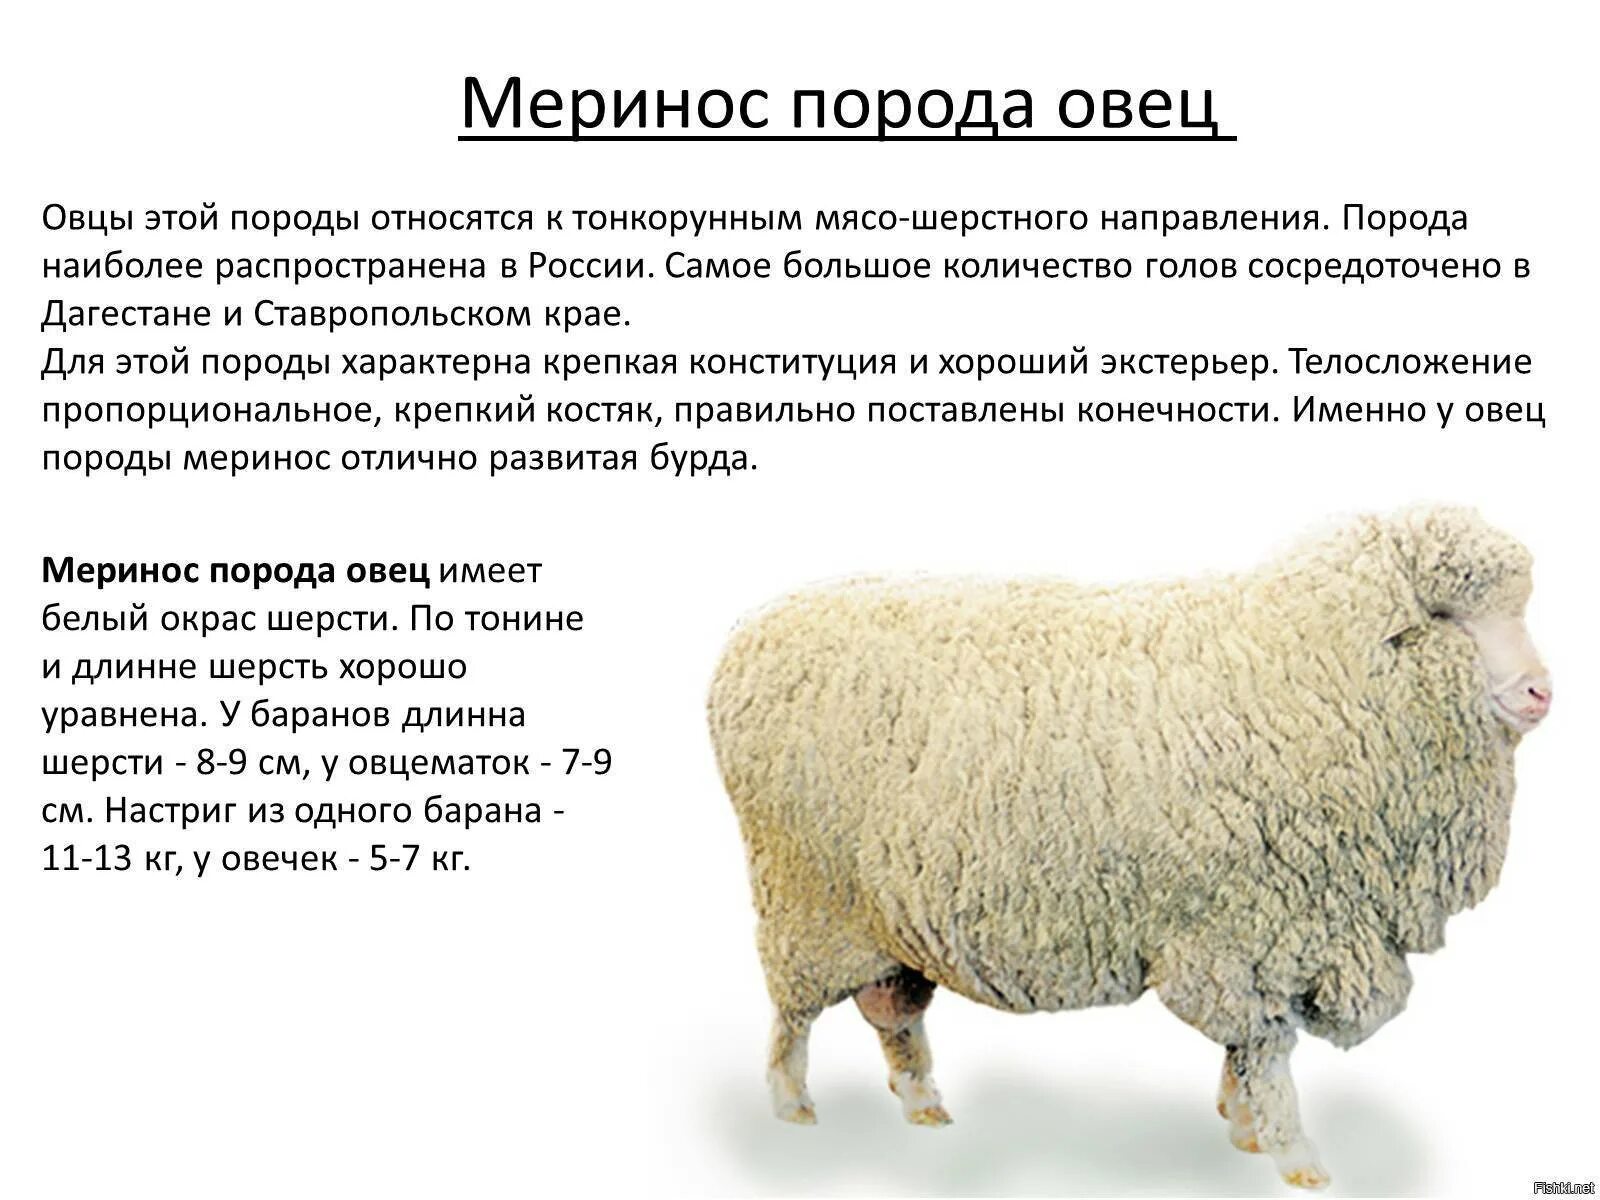 Австралийский меринос порода овец. Мериносы порода овец вес. Мериносы порода овец характеристика. Порода овец Джакоб. Направление шерсти